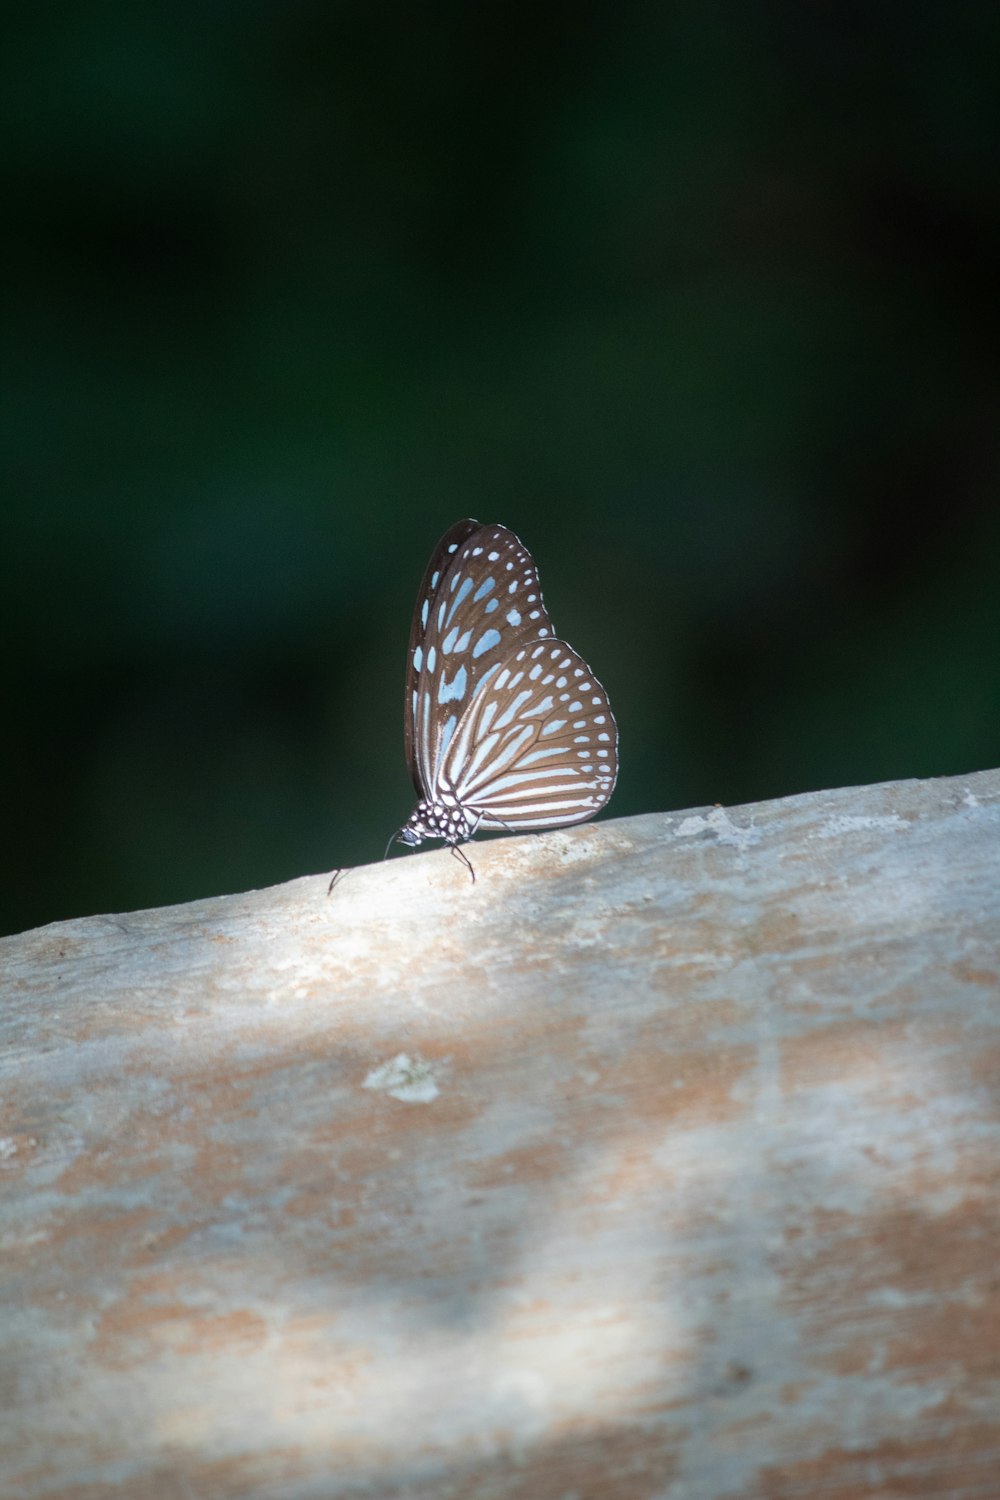 borboleta marrom e branca na superfície de madeira marrom